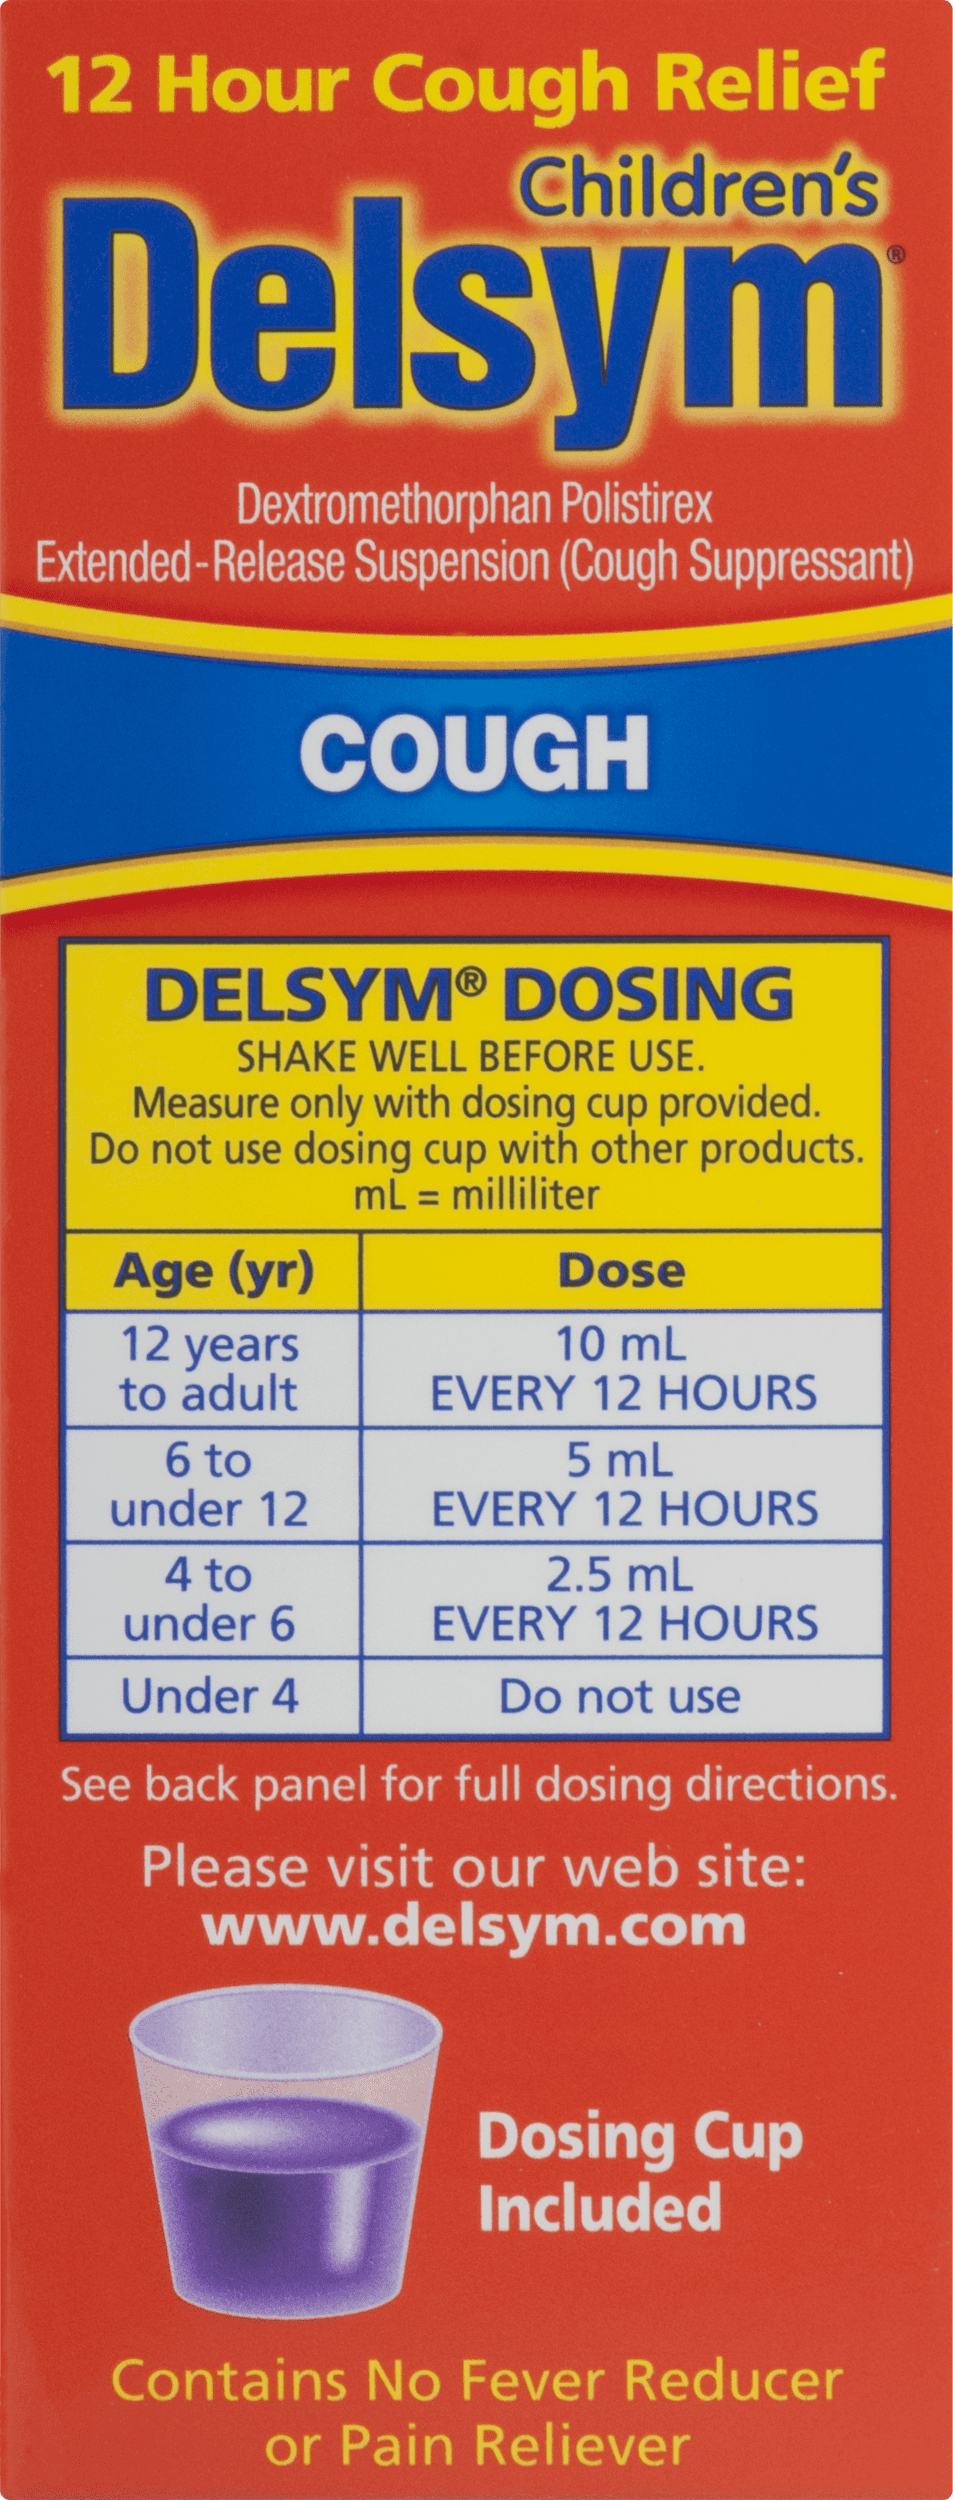 Delsym Weight Dosage Chart